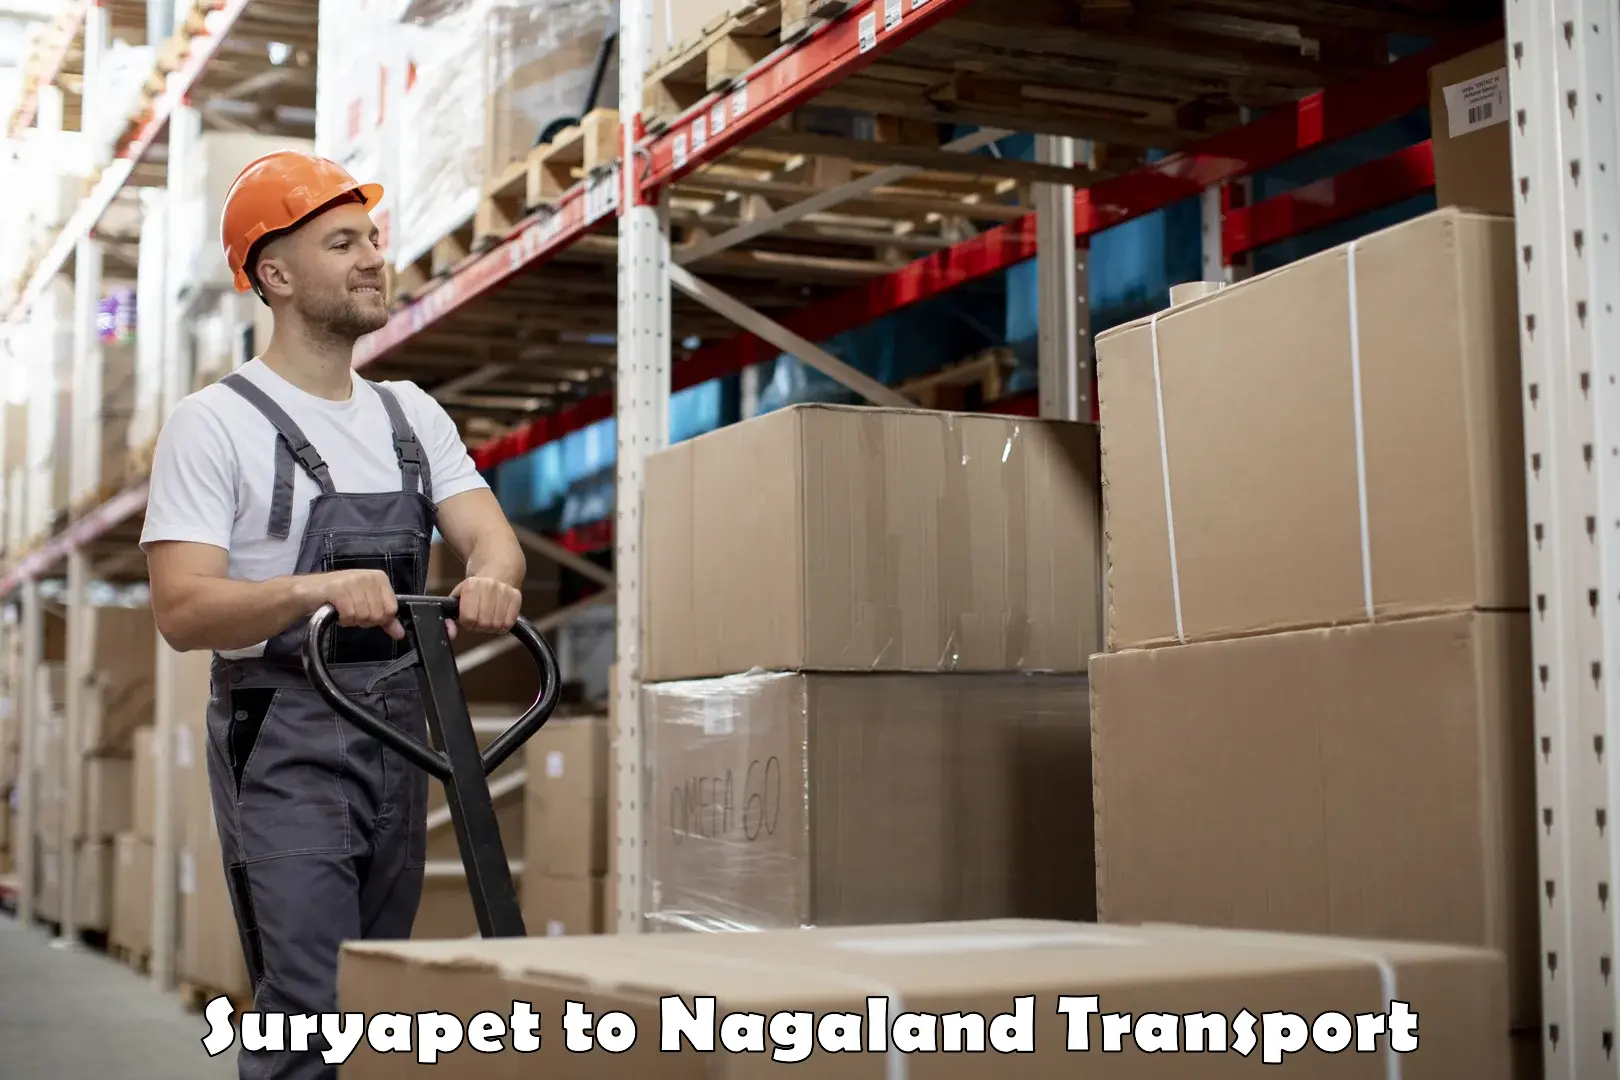 Shipping partner Suryapet to NIT Nagaland